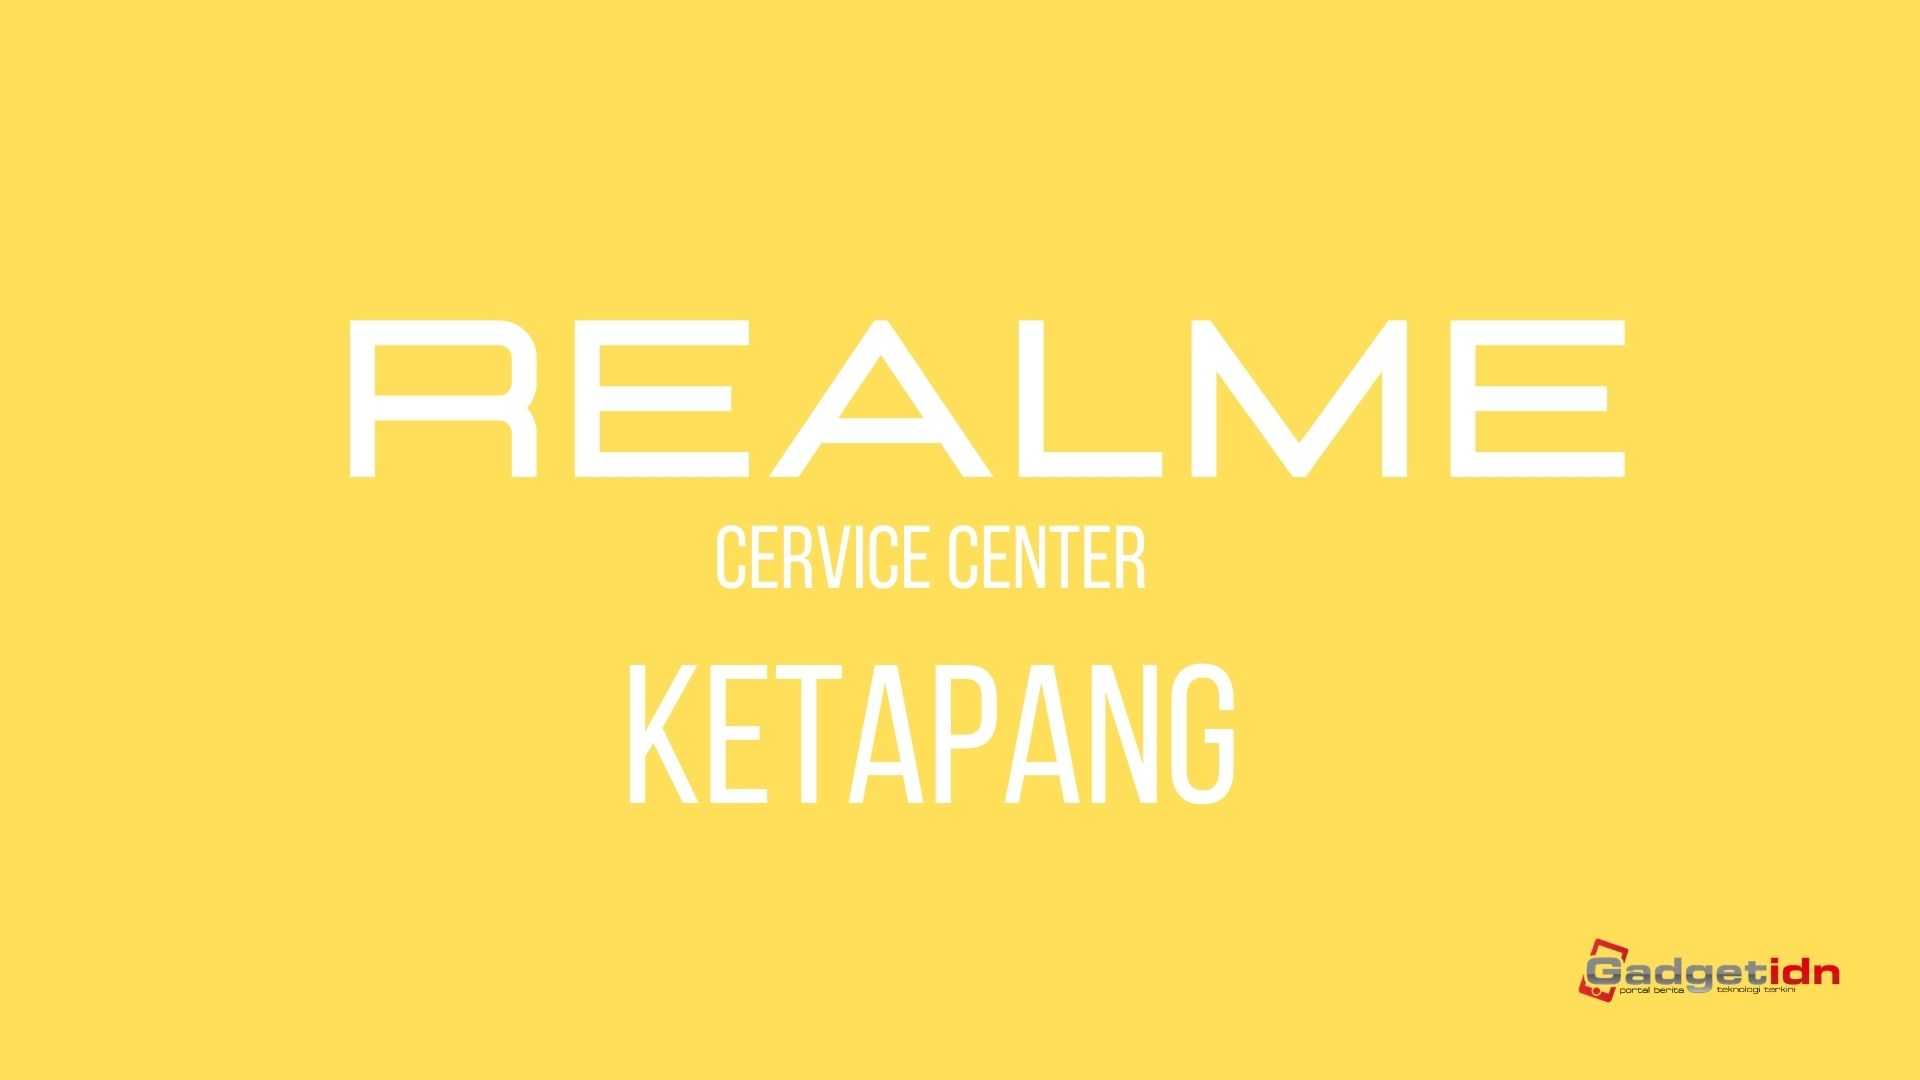 service center realme ketapang